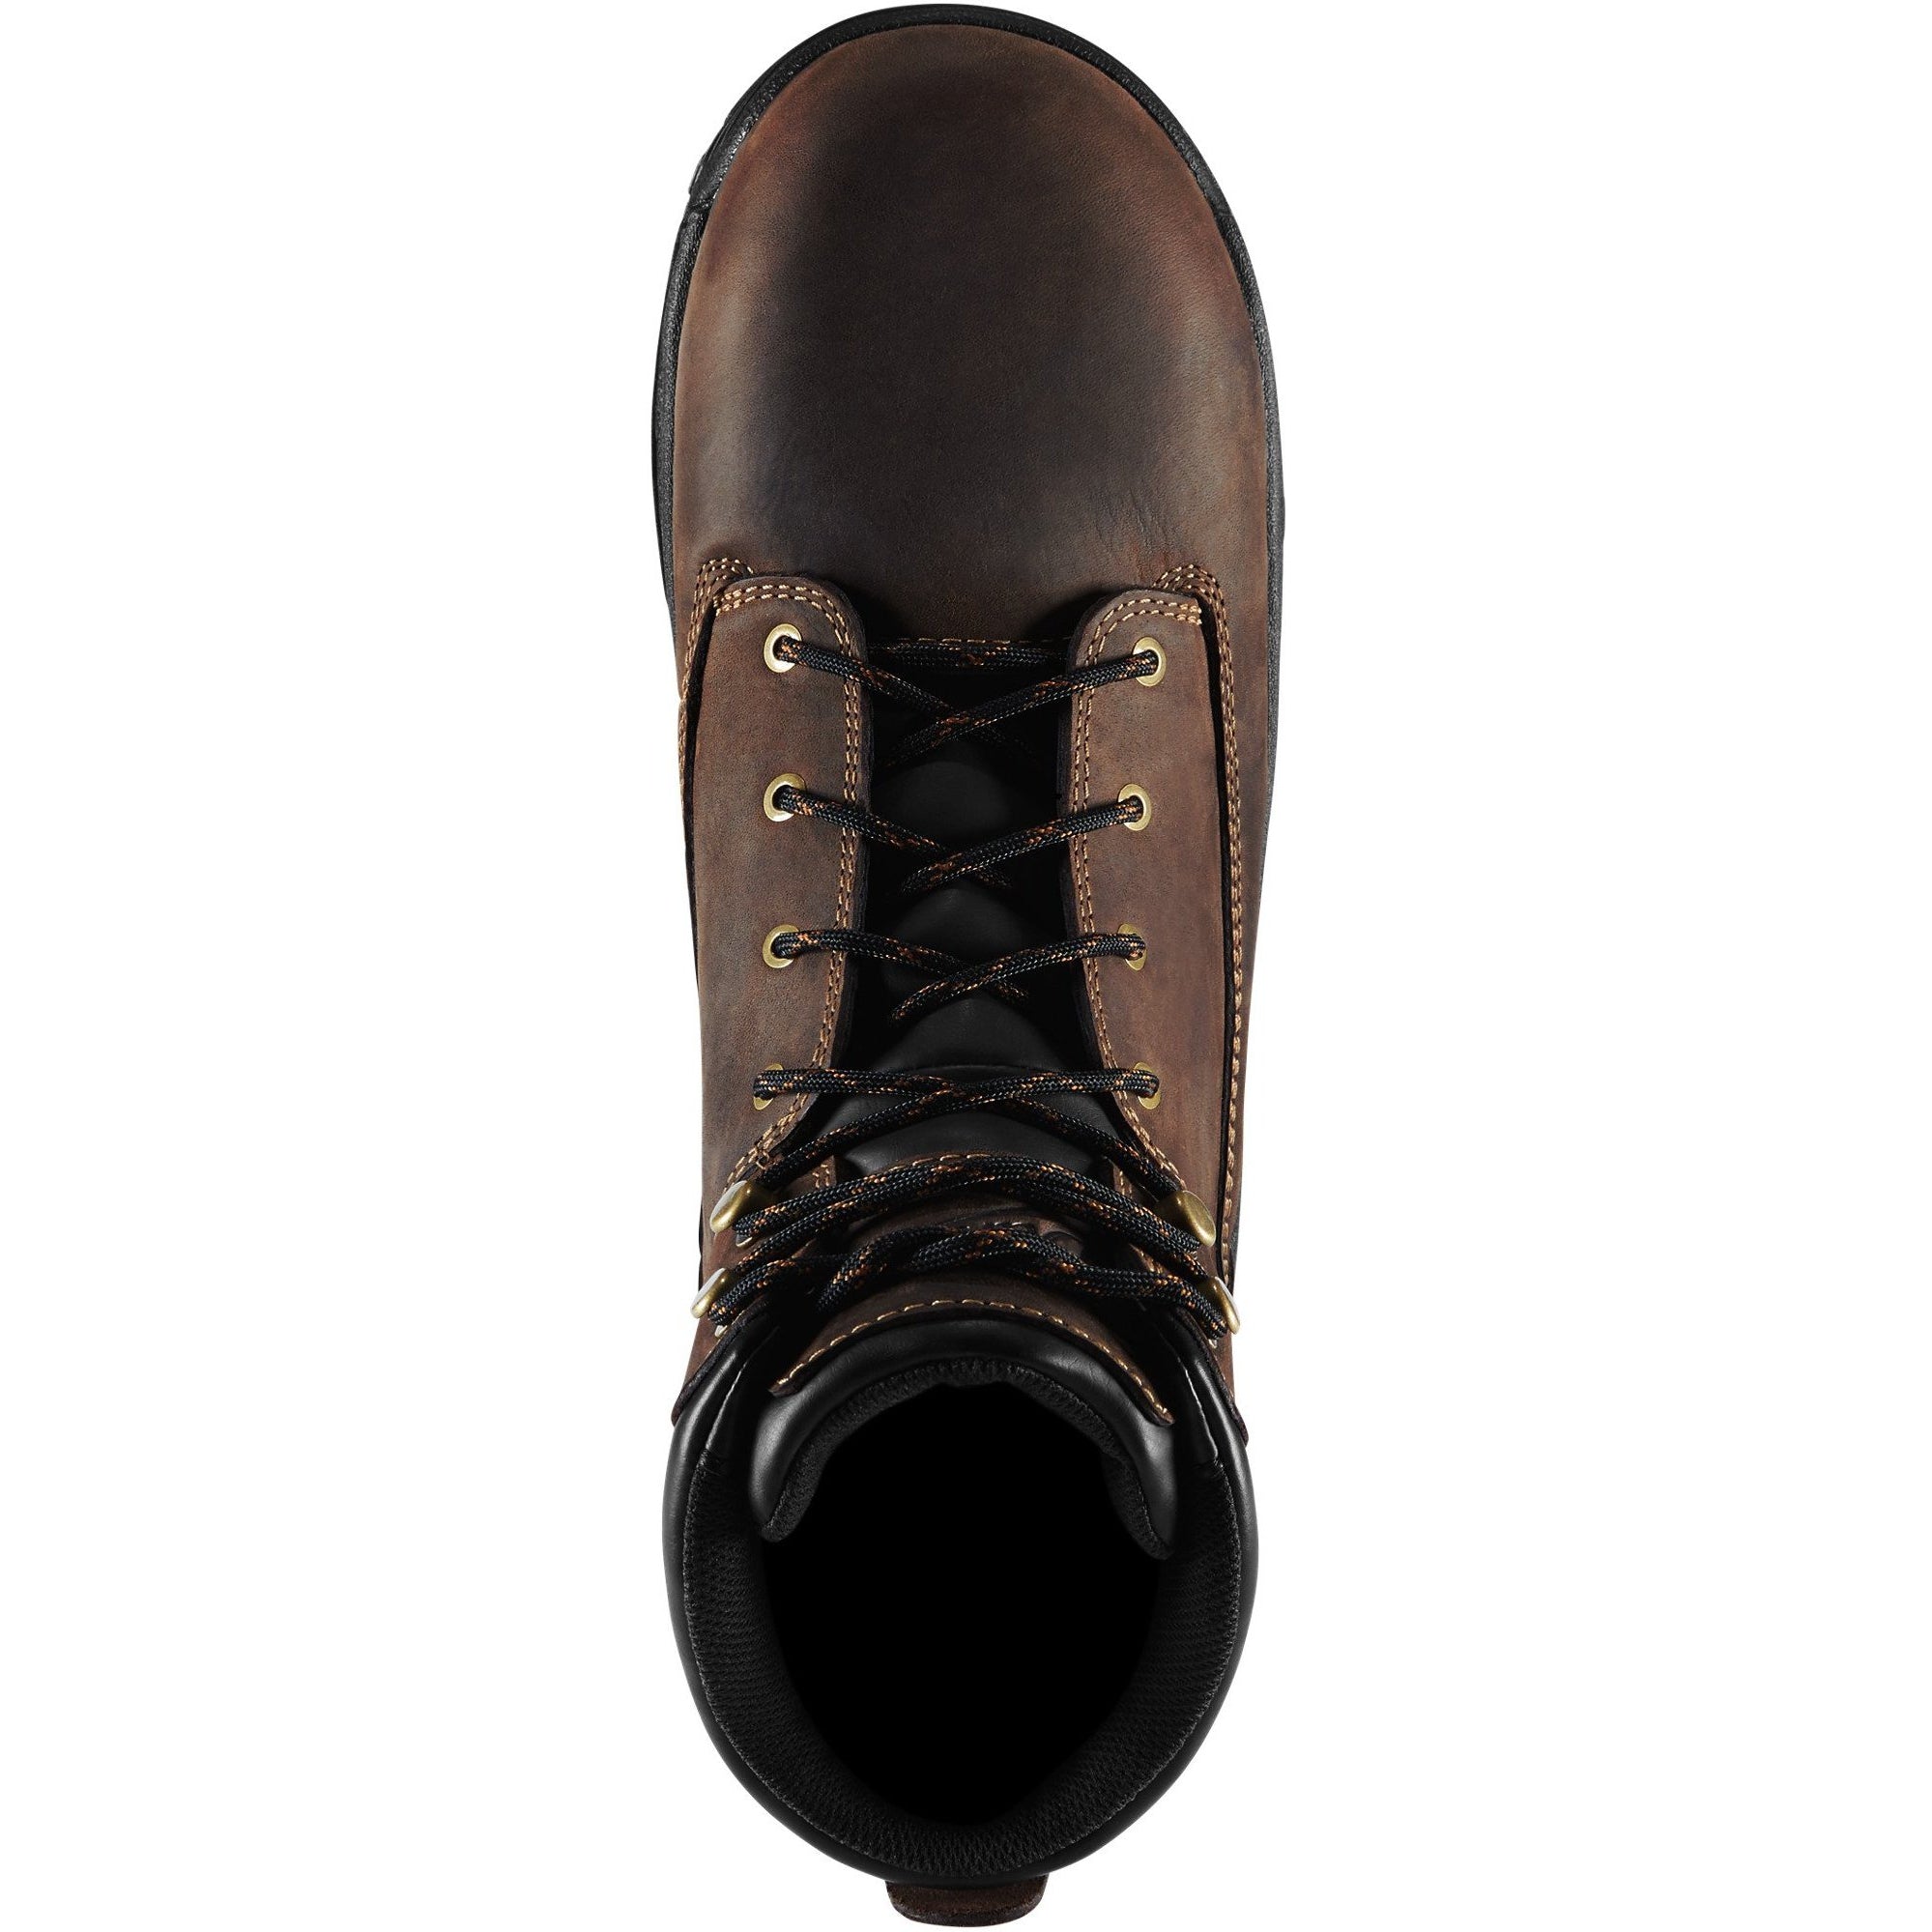 Danner Men's Caliper 6" Aluminum Toe WP Work Boot - Brown - 19453  - Overlook Boots